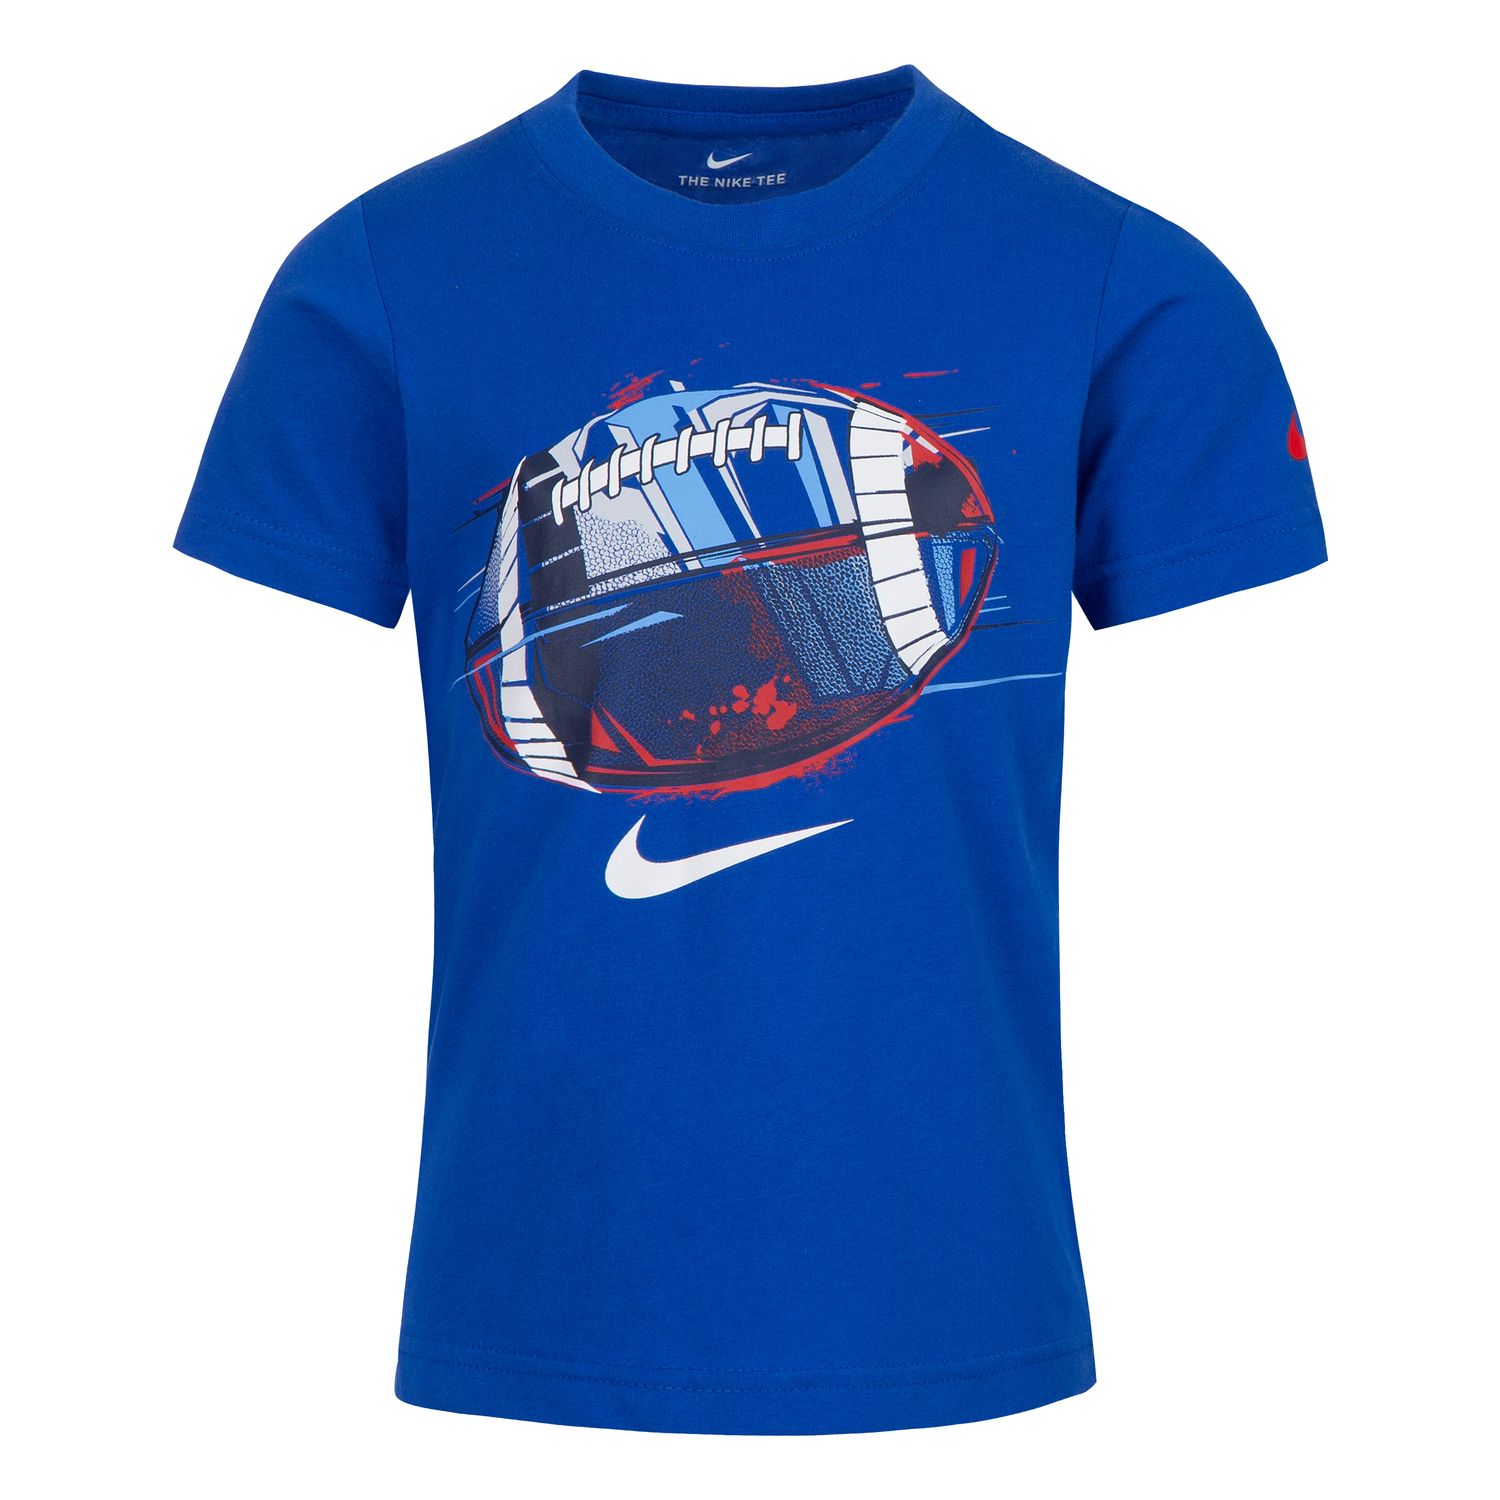 Boys 4-7 Nike Football Graphic T-Shirt